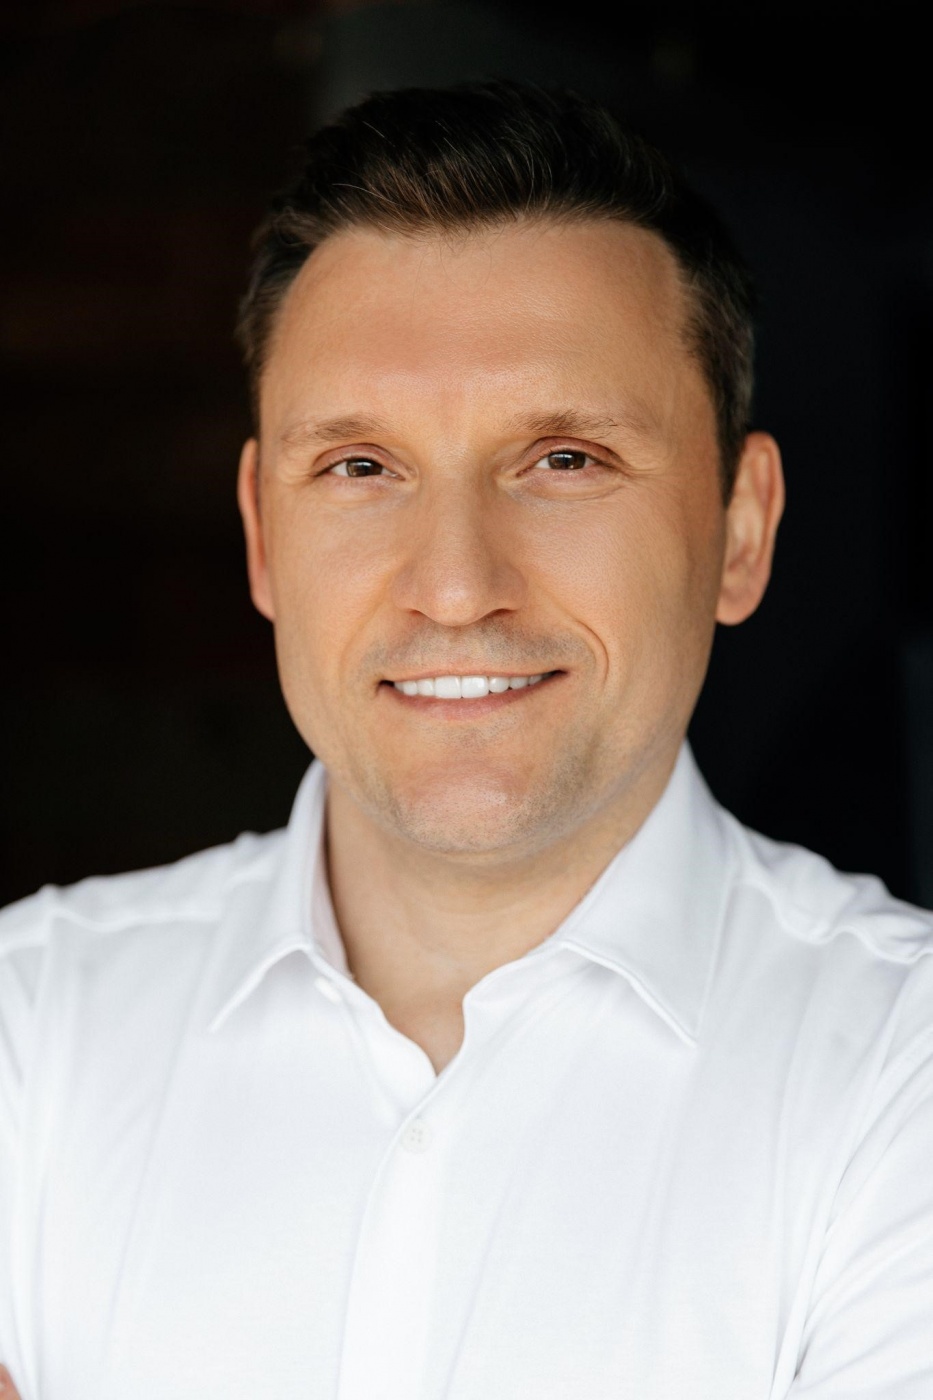 Роман Устименко, руководитель Alfa Beauty Group LLC: Украина начинается с таких личностей, как он